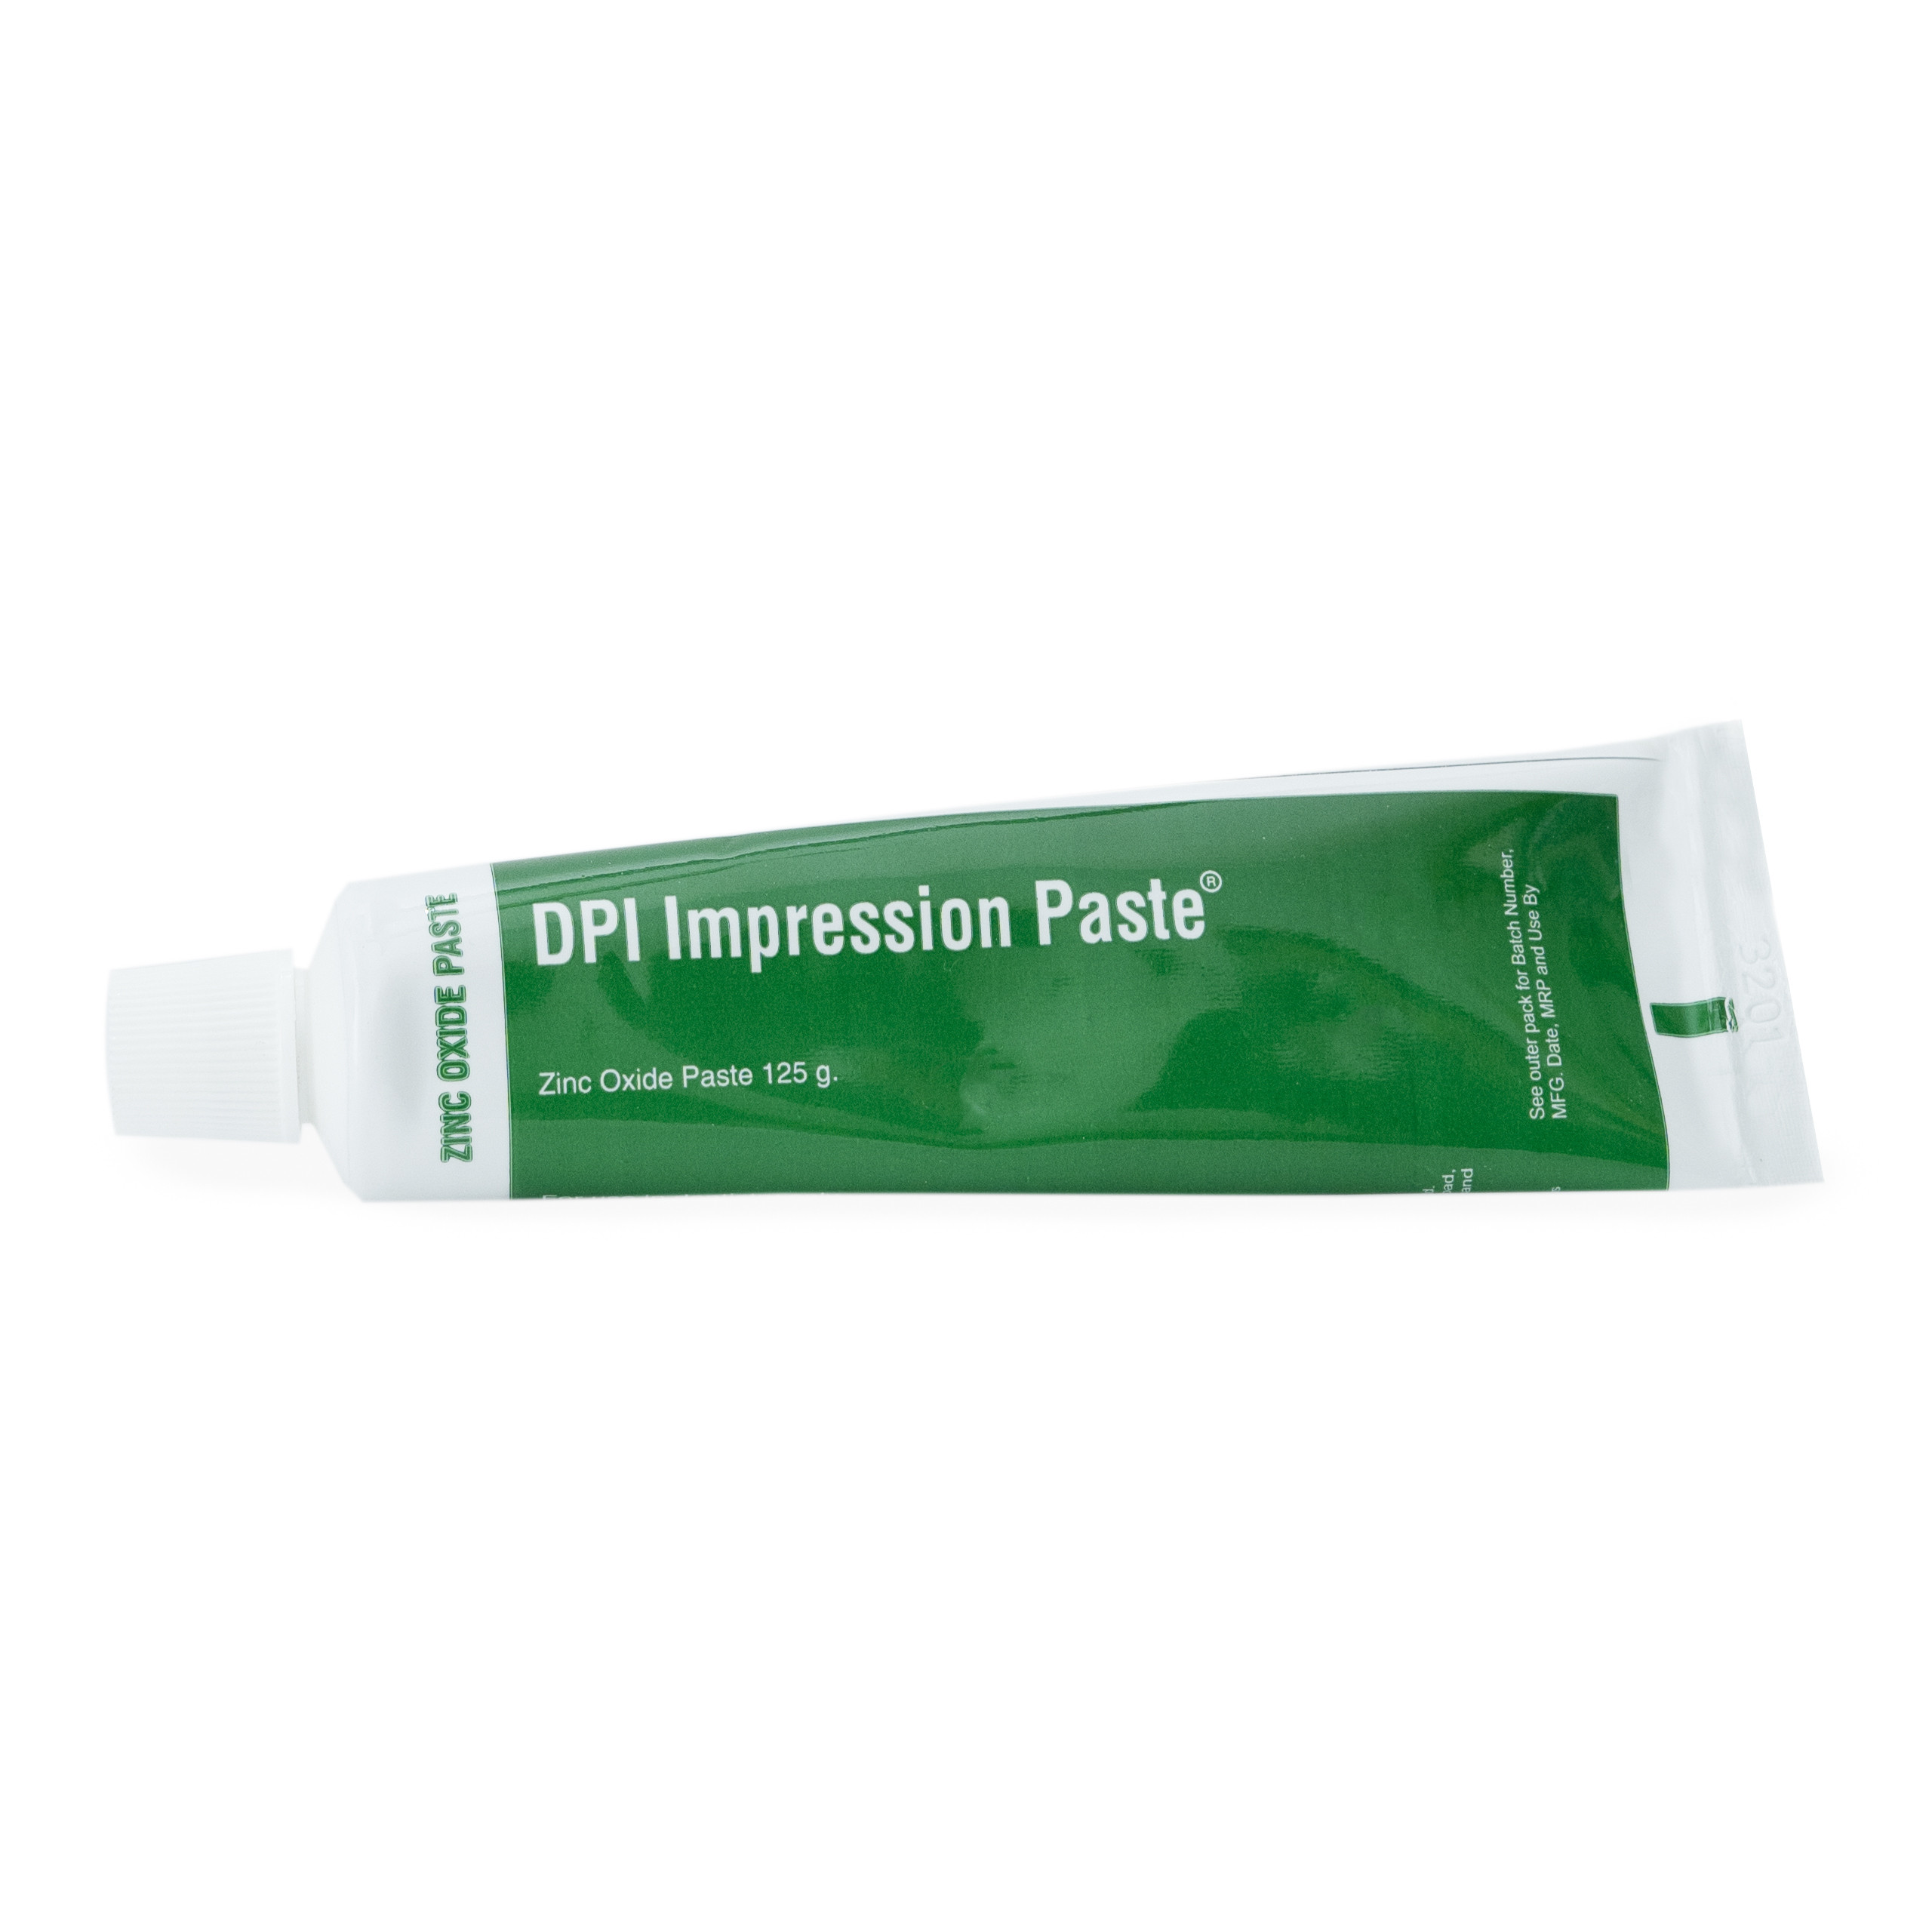 DPI Impression Paste (Zinc Oxide And Eugenol Impression Paste)